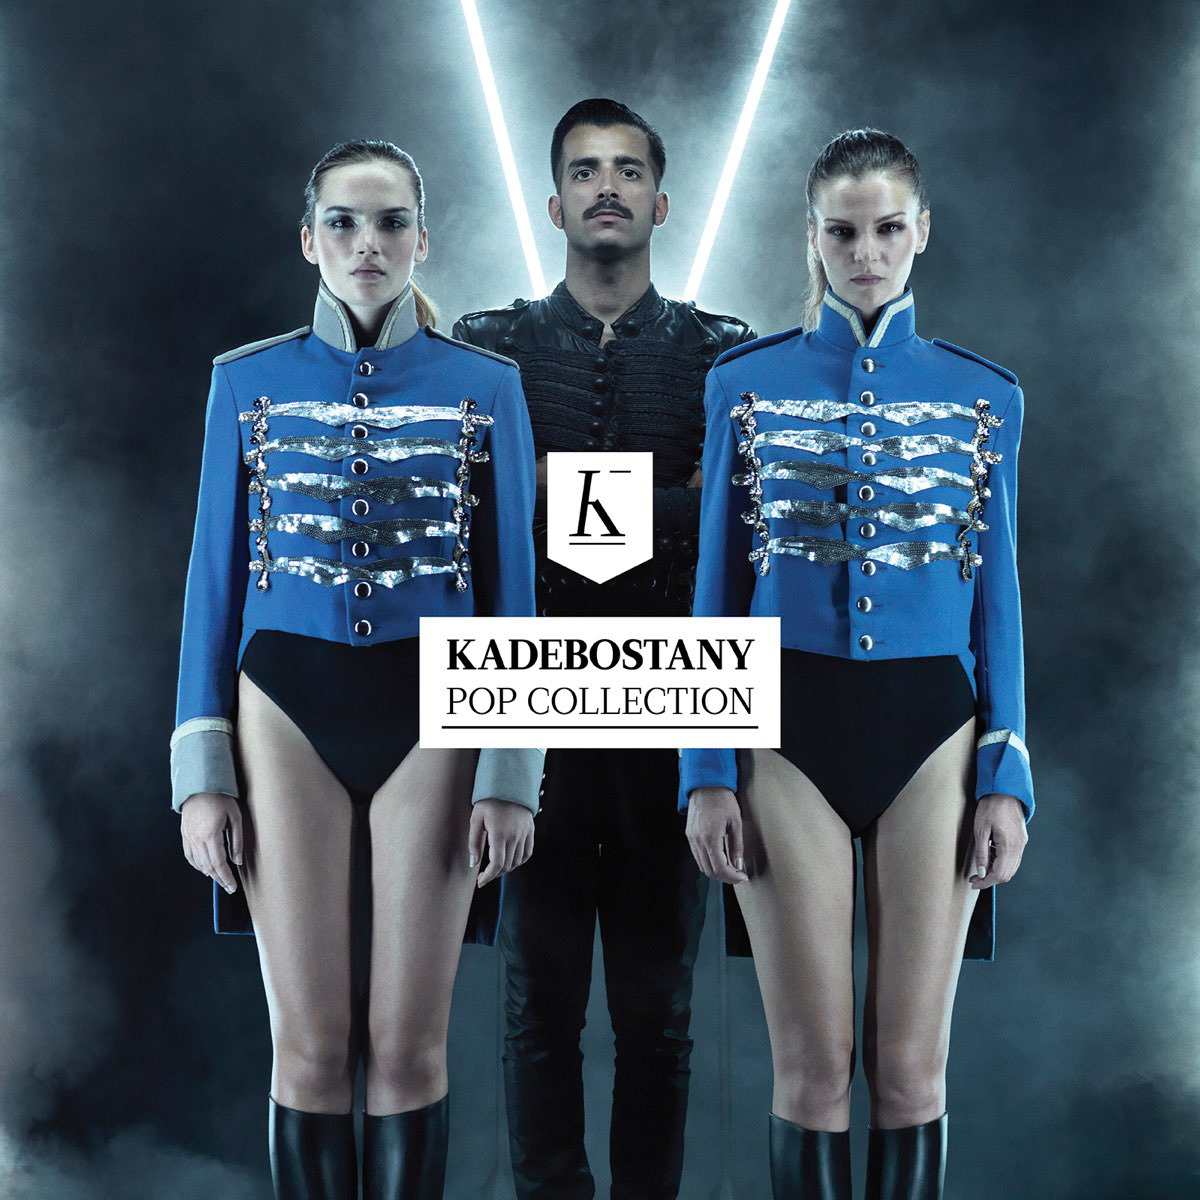 kadebostany website design pop collection cover kommigraphics